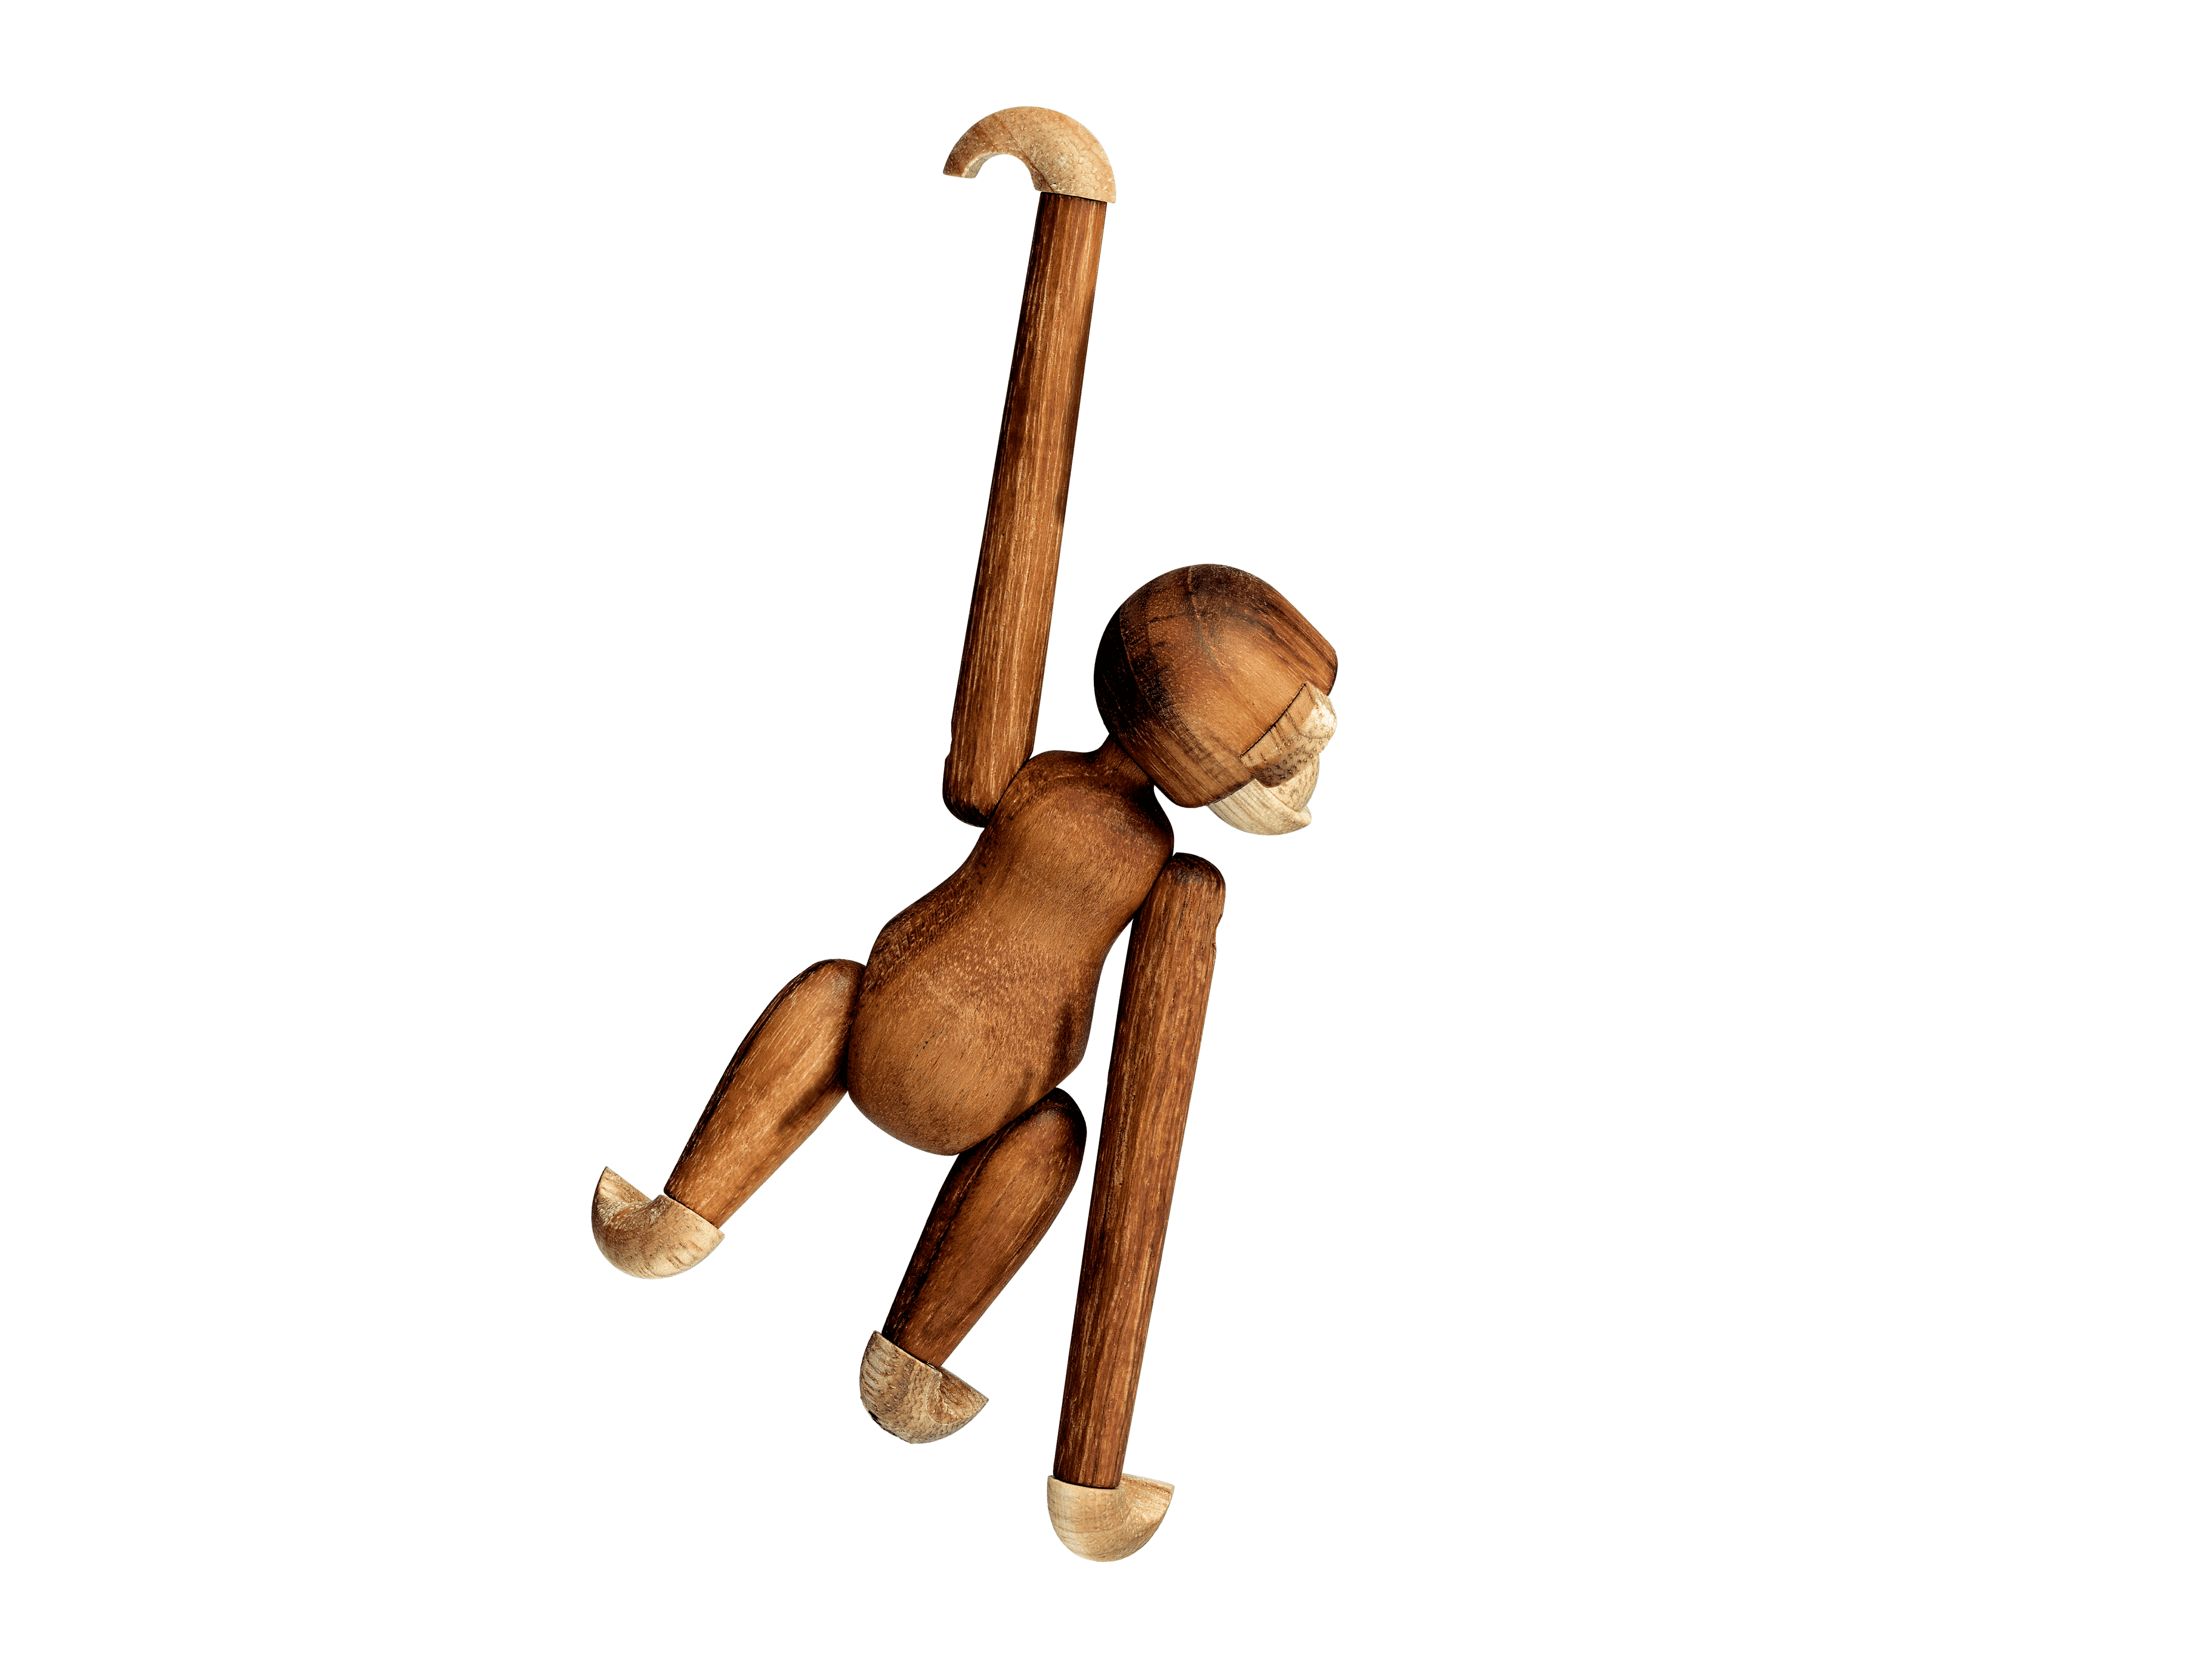 Monkey mini